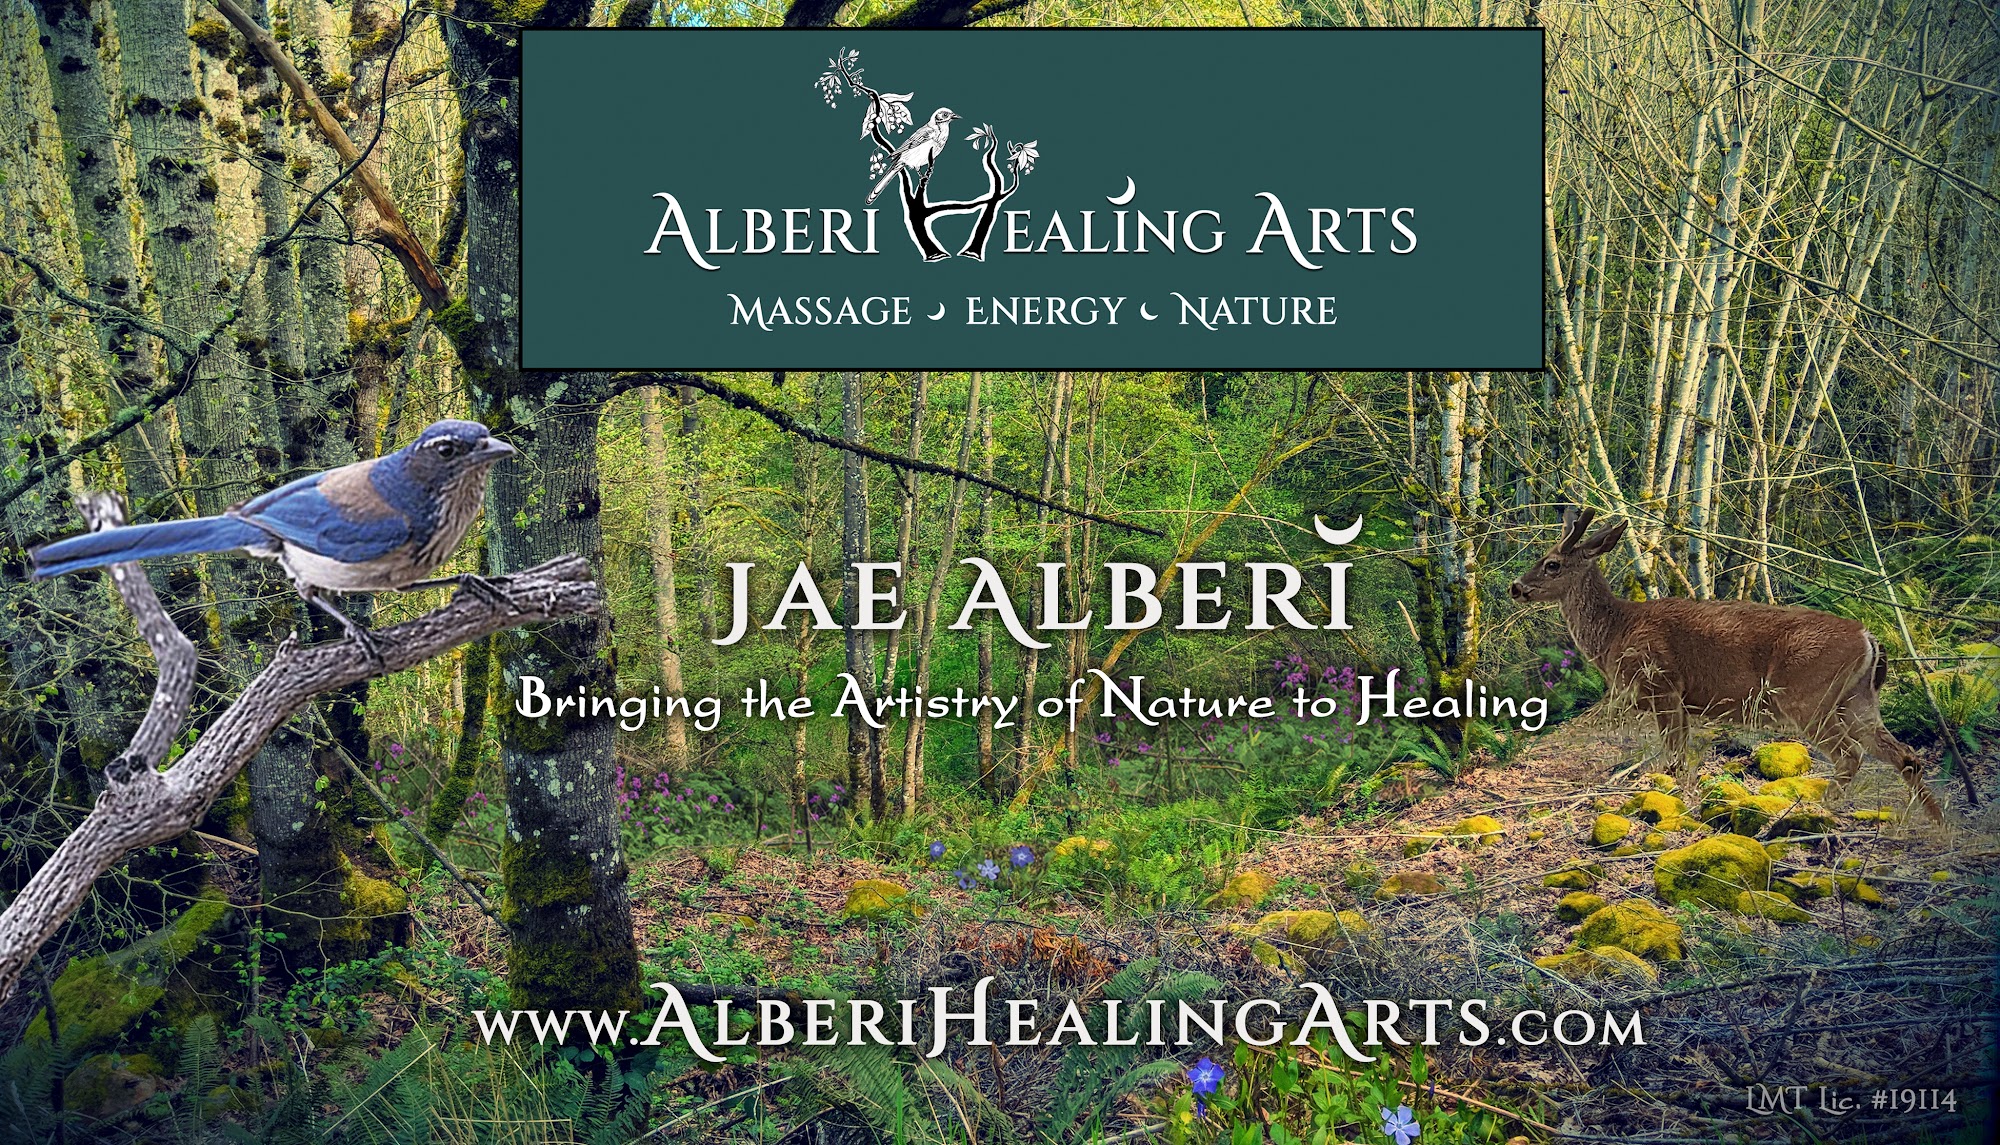 Alberi Healing Arts